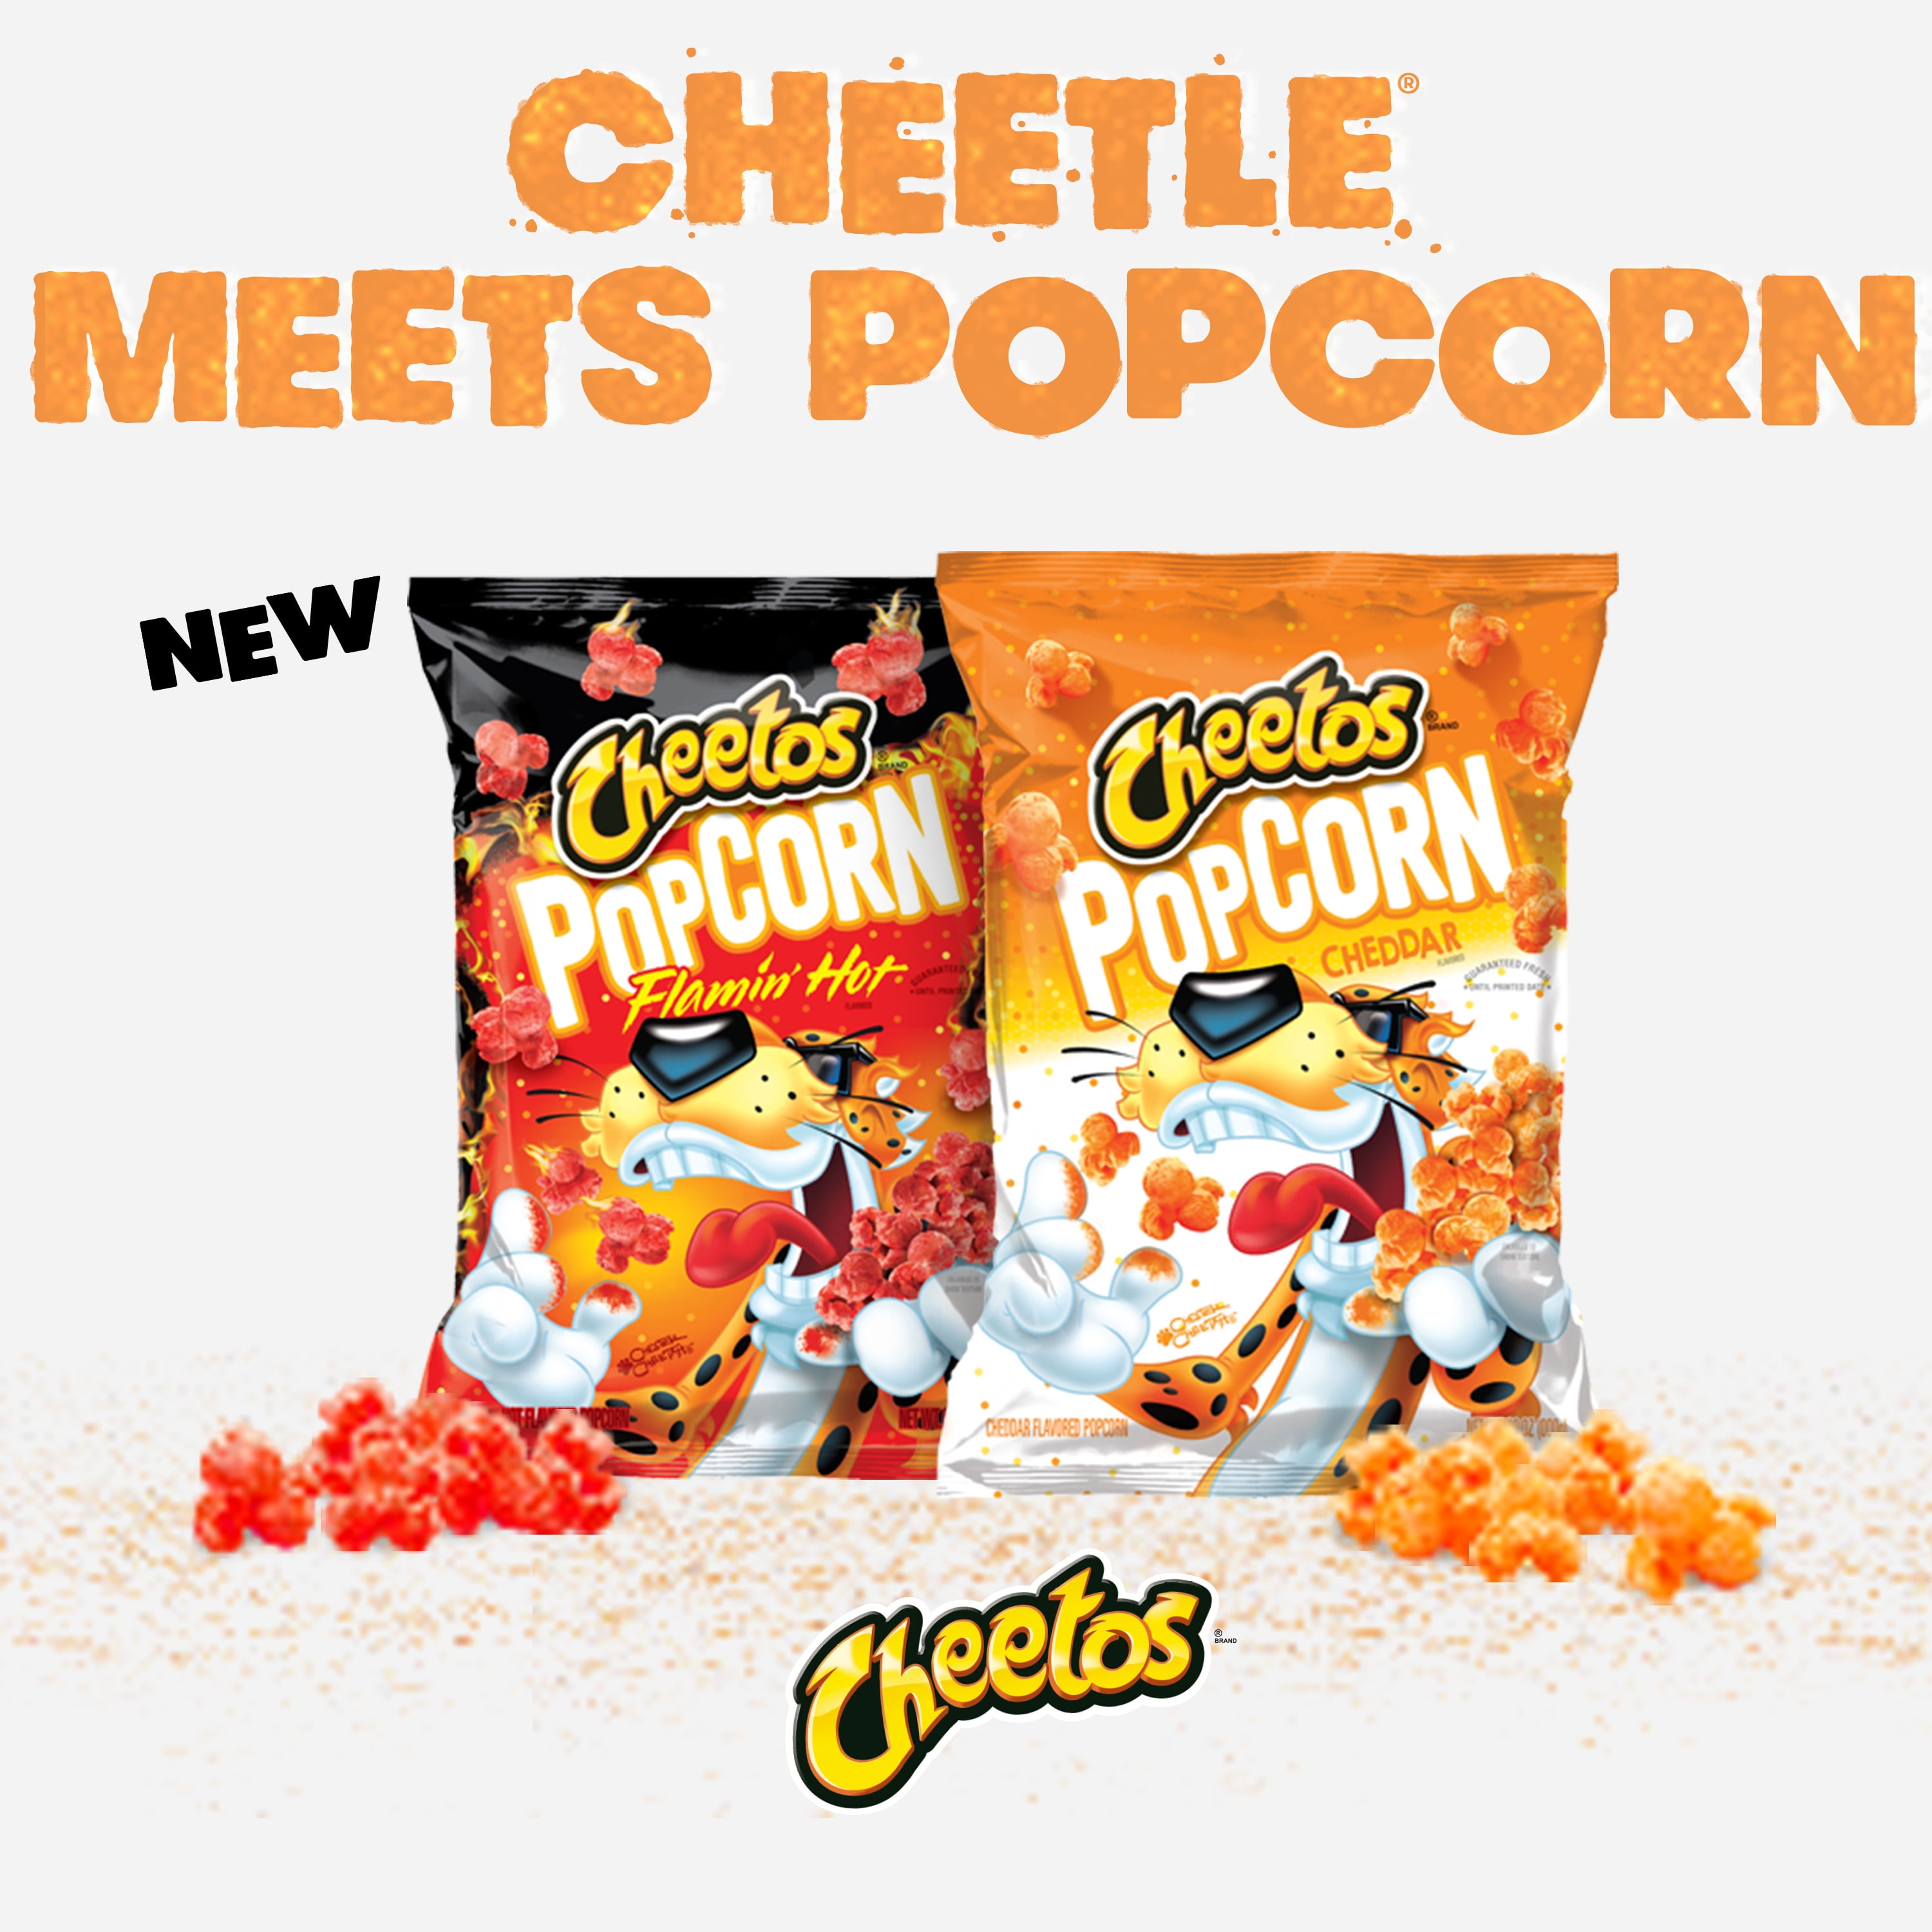  Cheetos Popcorn, Cheddar, Flamin' Hot & Jalapeño